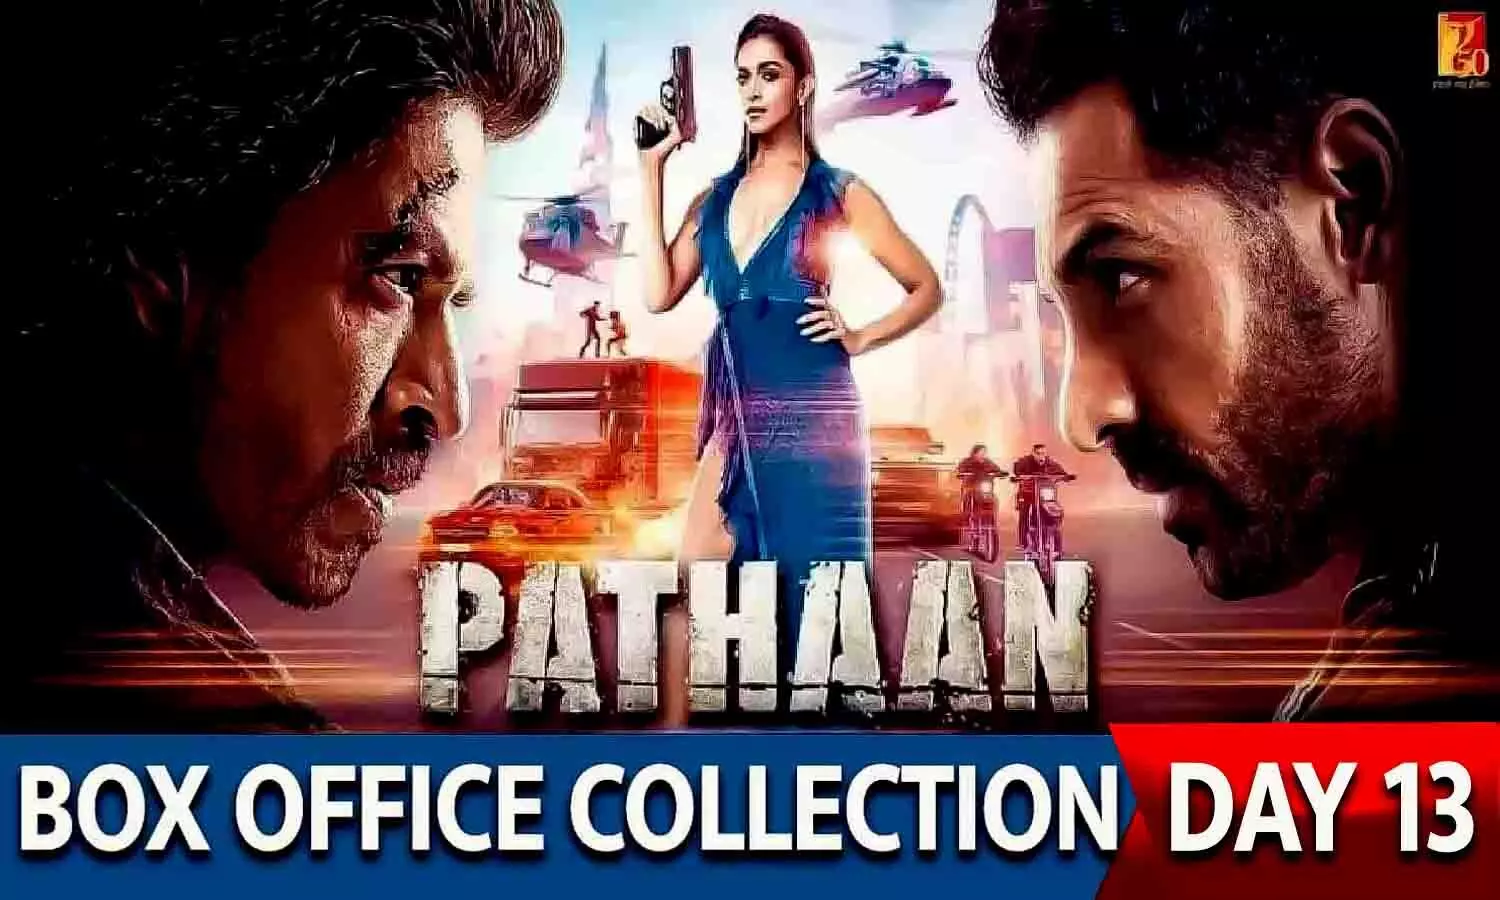 Pathaan Box Office Collection Day 13 : दूसरे सोमवार को भी हॉउसफुल रही शाहरुख खान की पठान, बनी वर्ल्डवाइड नंबर 1 हिंदी फिल्म; जानिए 13वें दिन का बॉक्स ऑफिस कलेक्शन